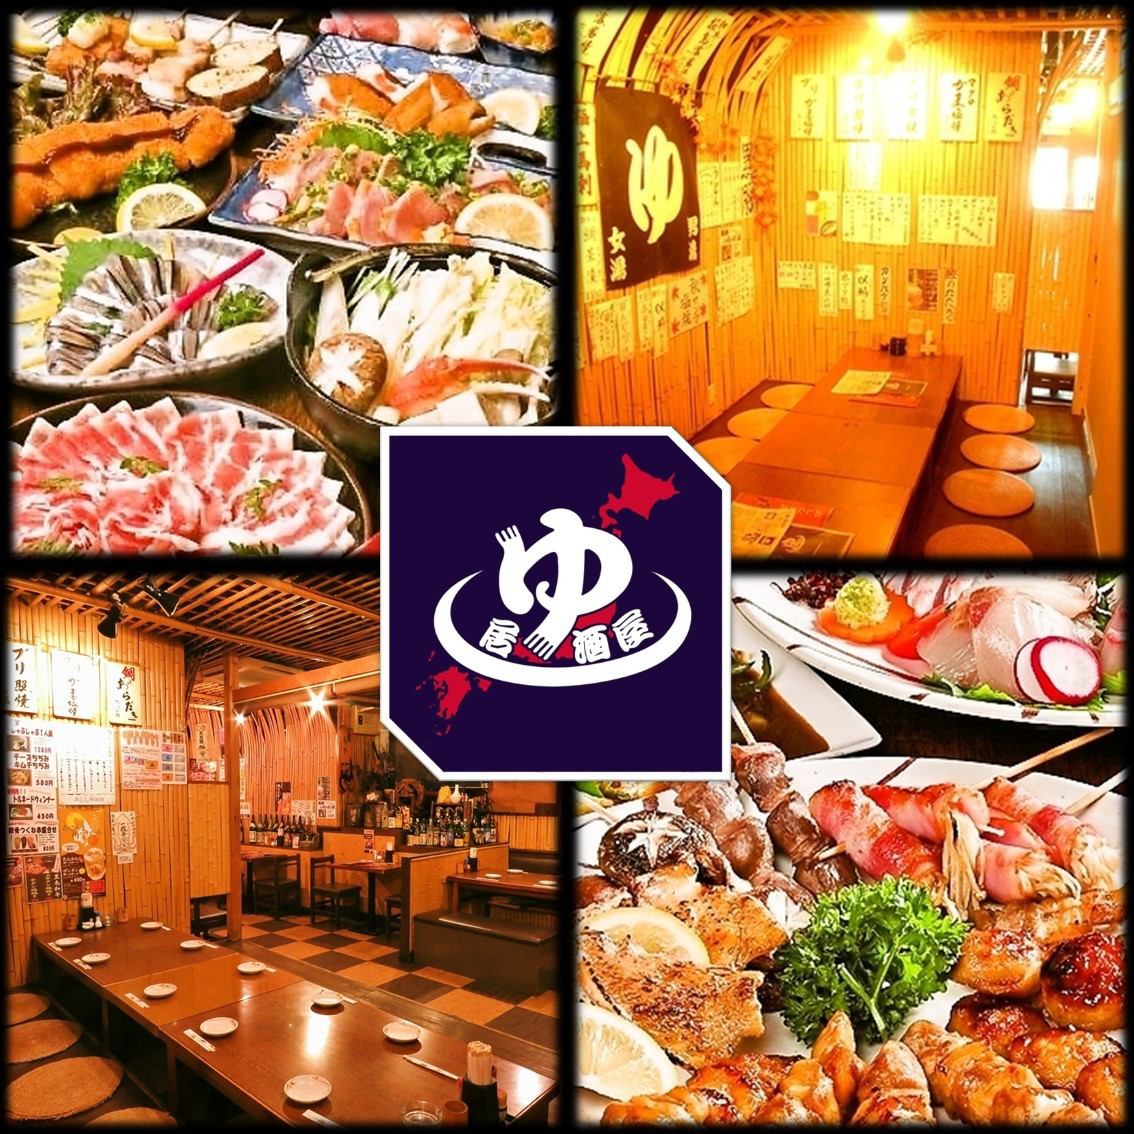 受歡迎的烤雞肉串和很多地方美食♪有200多種菜單!! [飲酒]宴會套餐2500日元〜